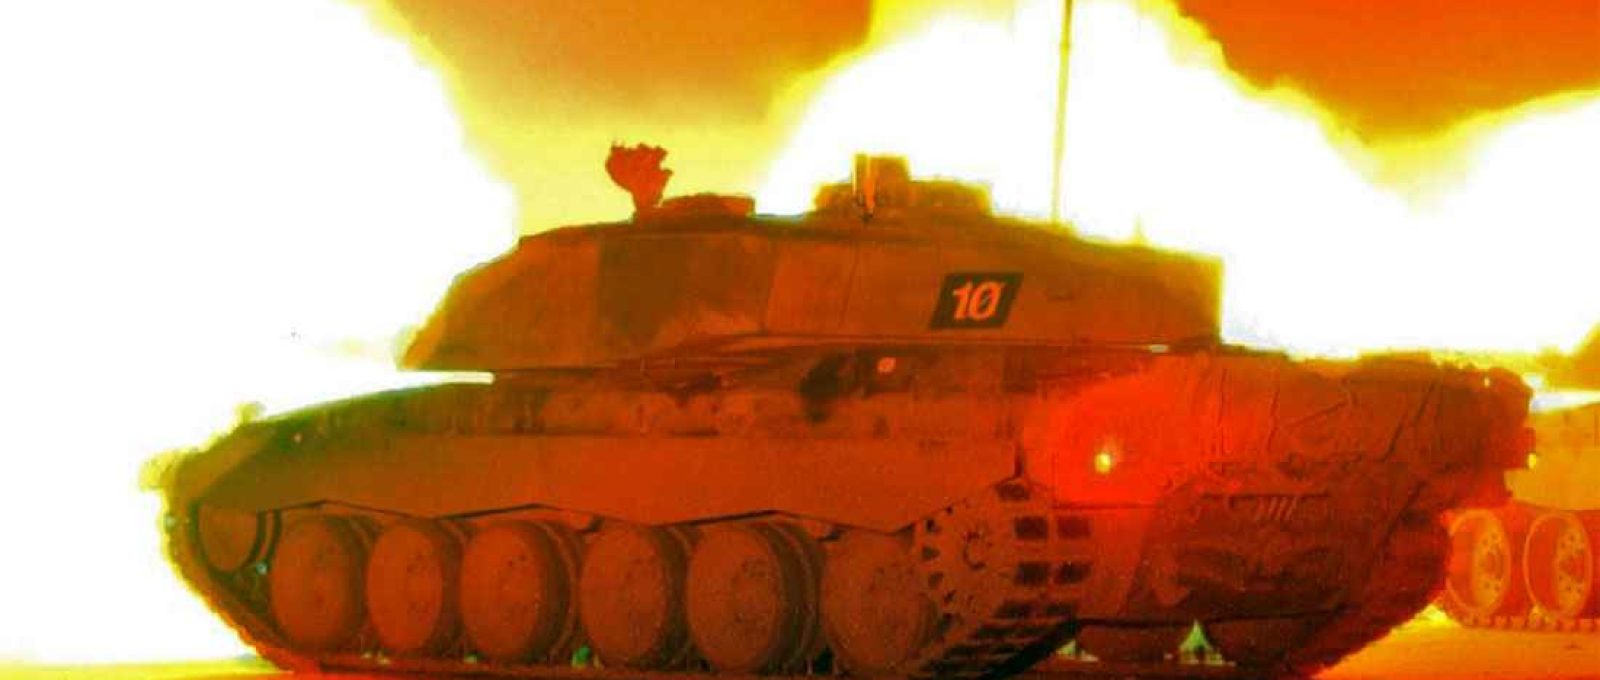 Tanques Challenger 2 disparam seus canhões durante exercício de tiro noturno (Creative Commons).